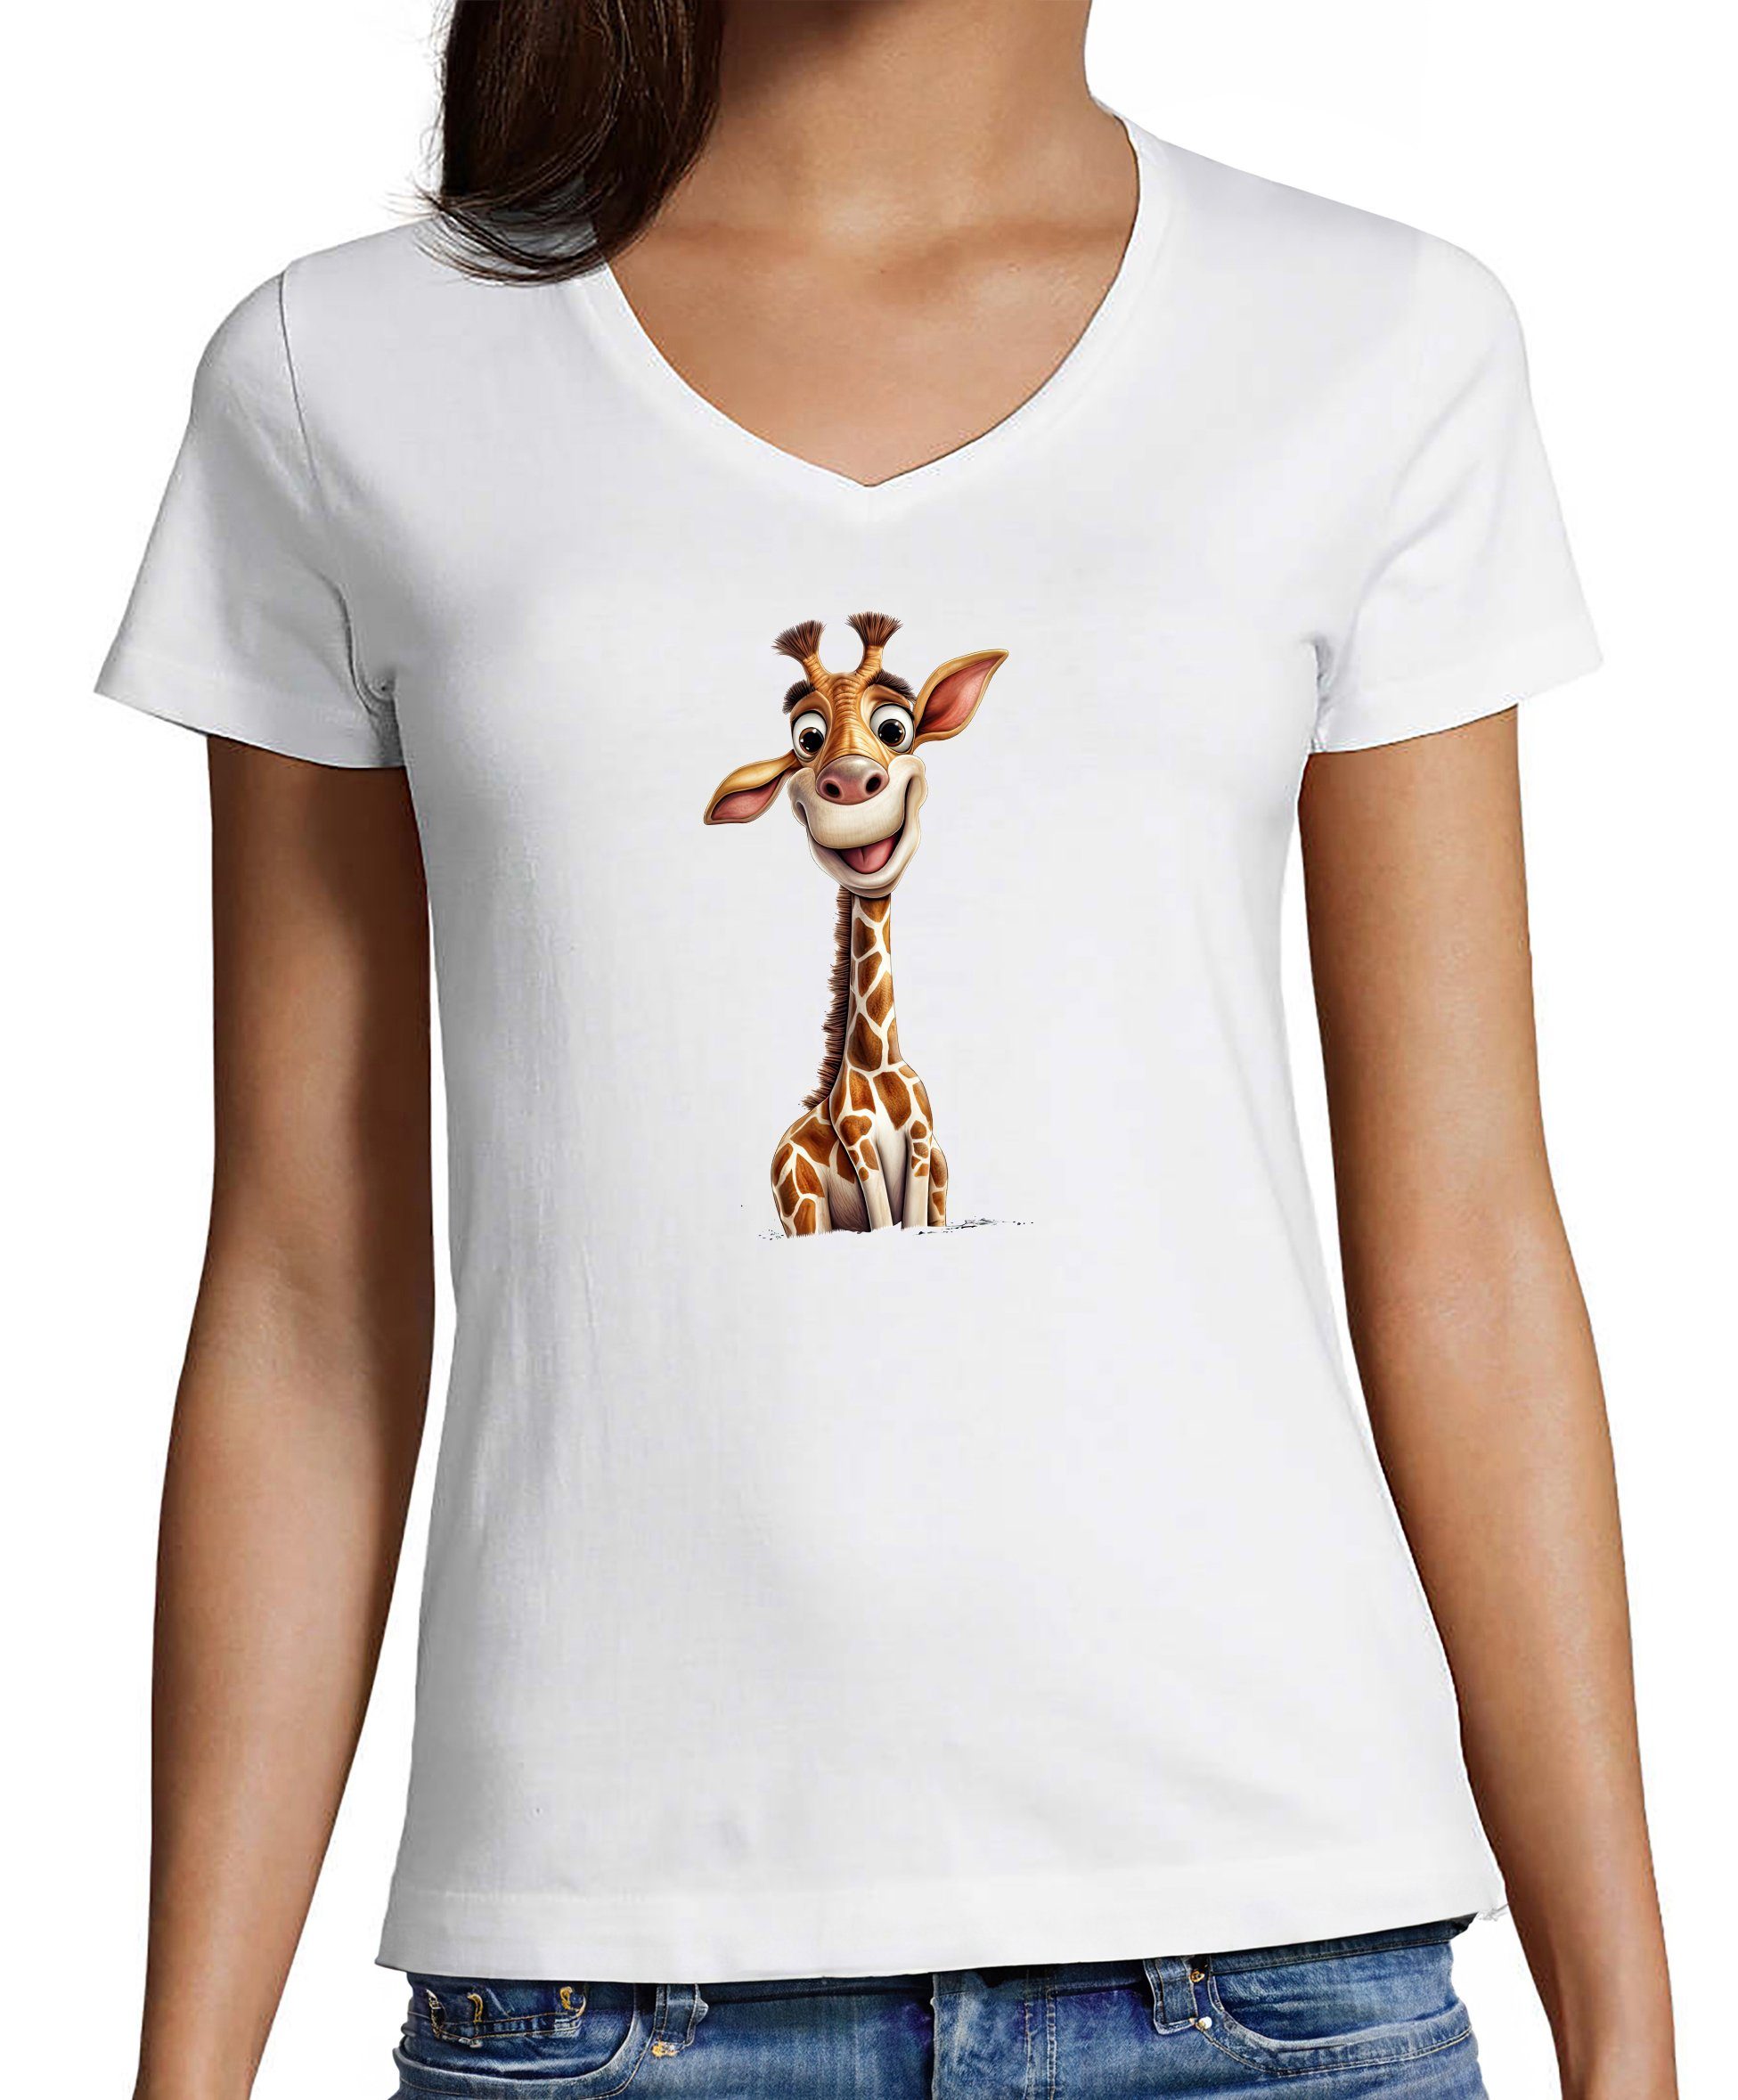 MyDesign24 T-Shirt Damen Wildtier Print Shirt - Baby Giraffe V-Ausschnitt Baumwollshirt mit Aufdruck Slim Fit, i273 weiss | V-Shirts